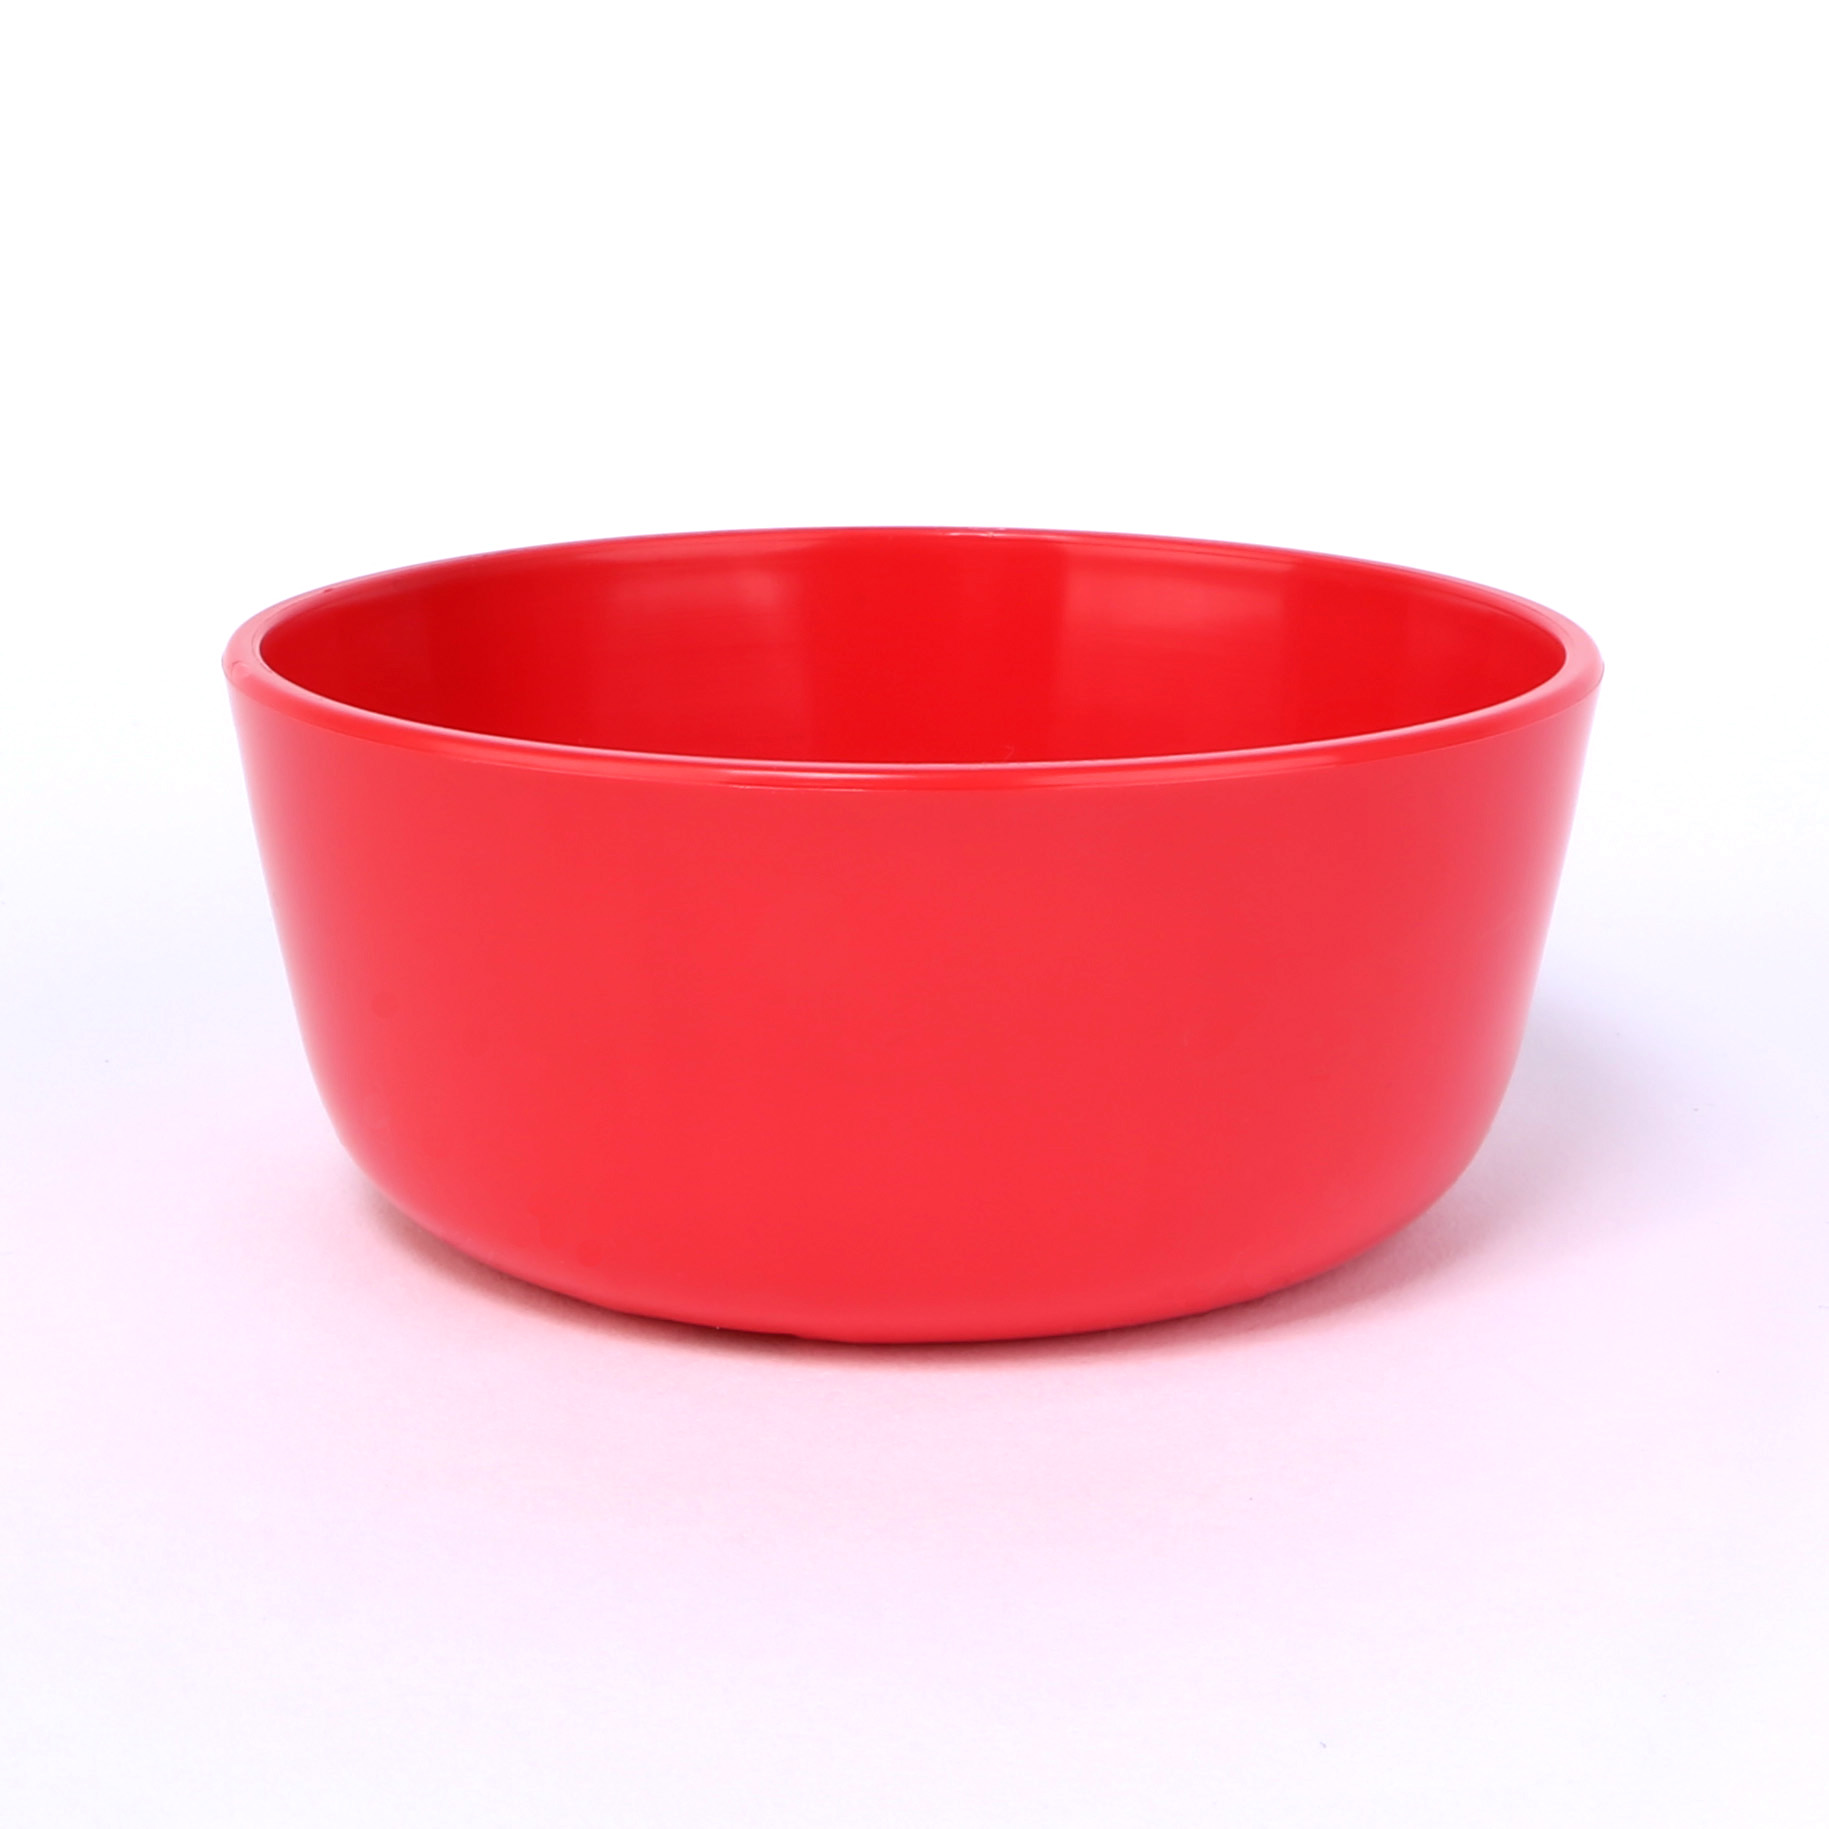 vaLon Zephyr hohe Dessertschale 11 cm aus schadstofffreiem Kunststoff in der Farbe rot.